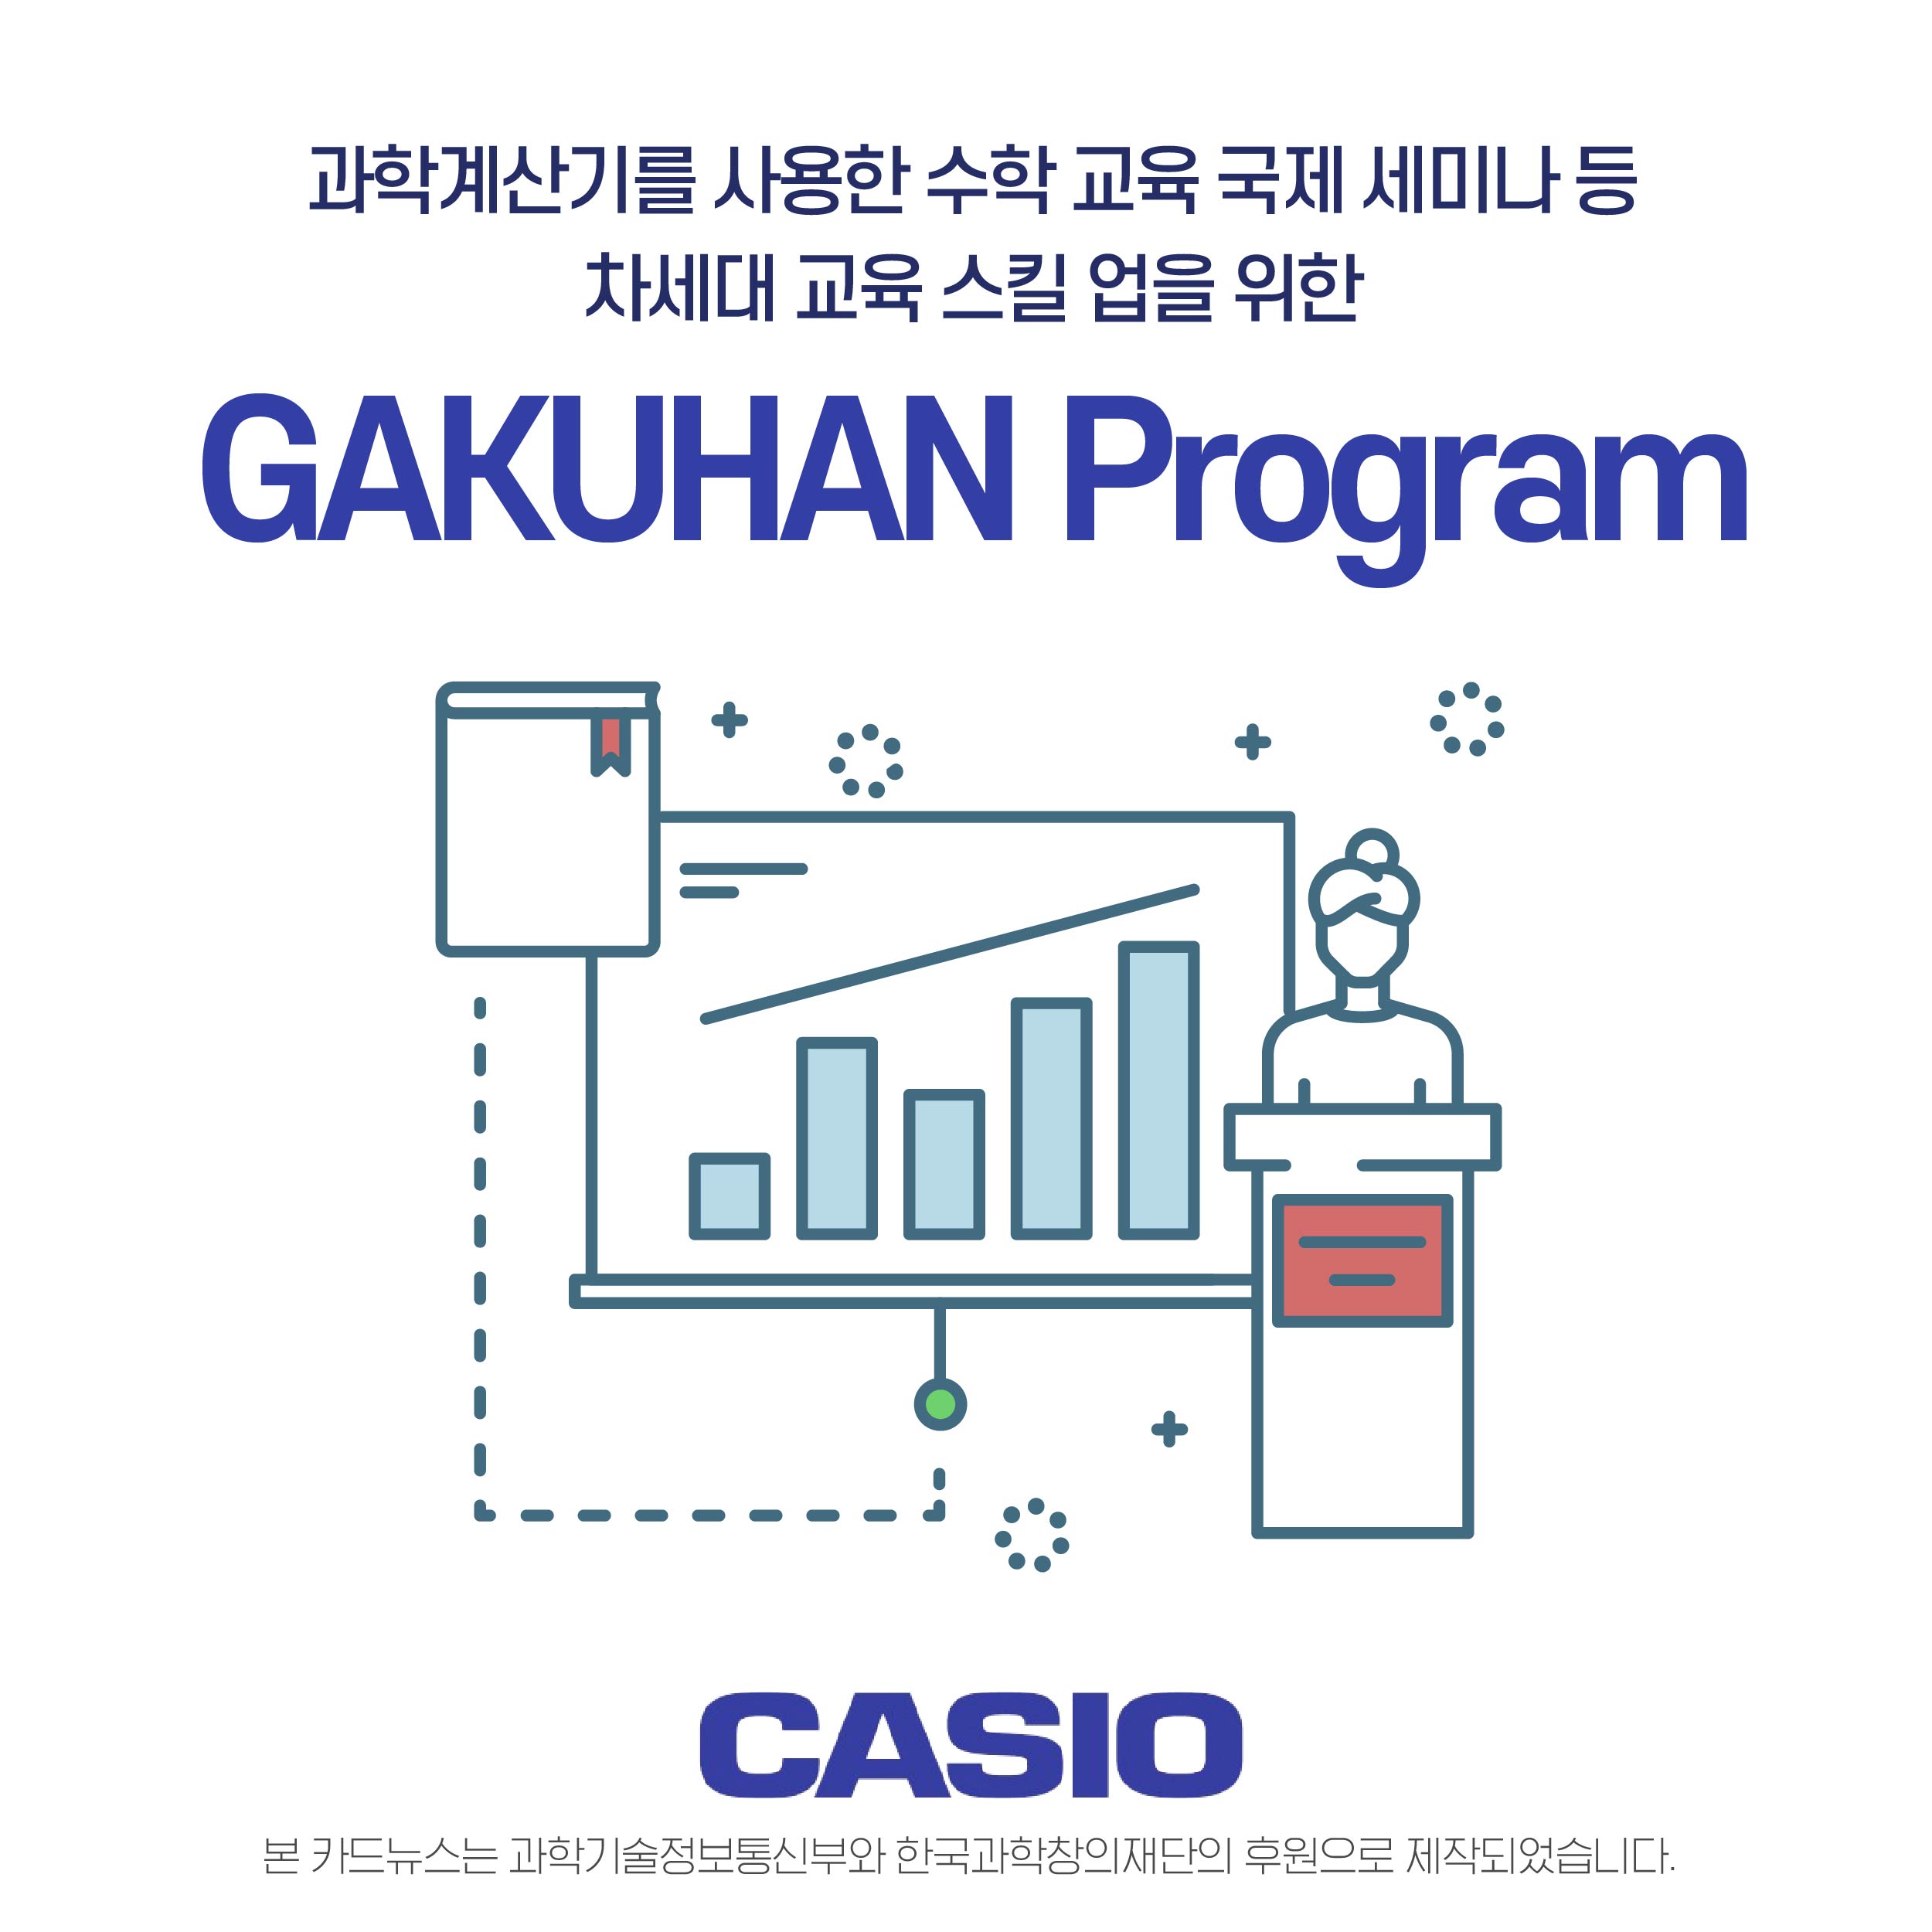 과학계산기를 사용한 수학 교육 국제 세미나 등 차세대 교육 스킬 업을 위한 gakuhan program